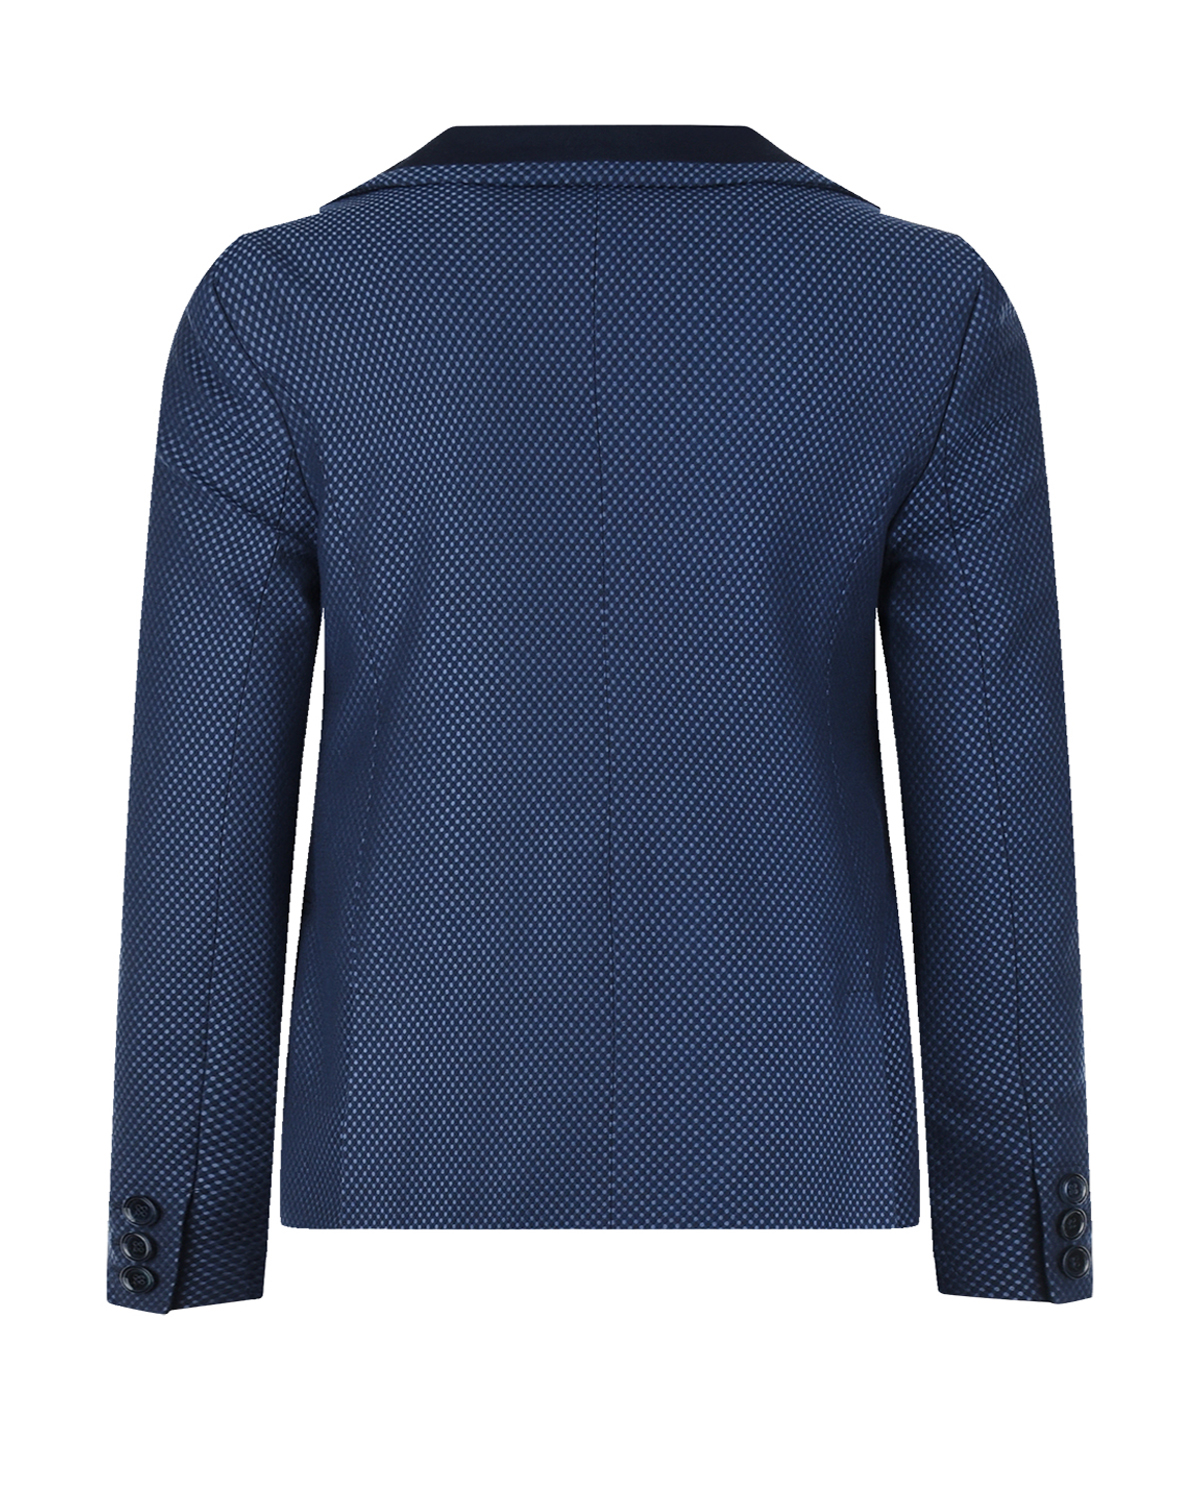 Комплект: пиджак, жилет, рубашка с бабочкой и брюки Clix детский, размер 116, цвет мультиколор - фото 5